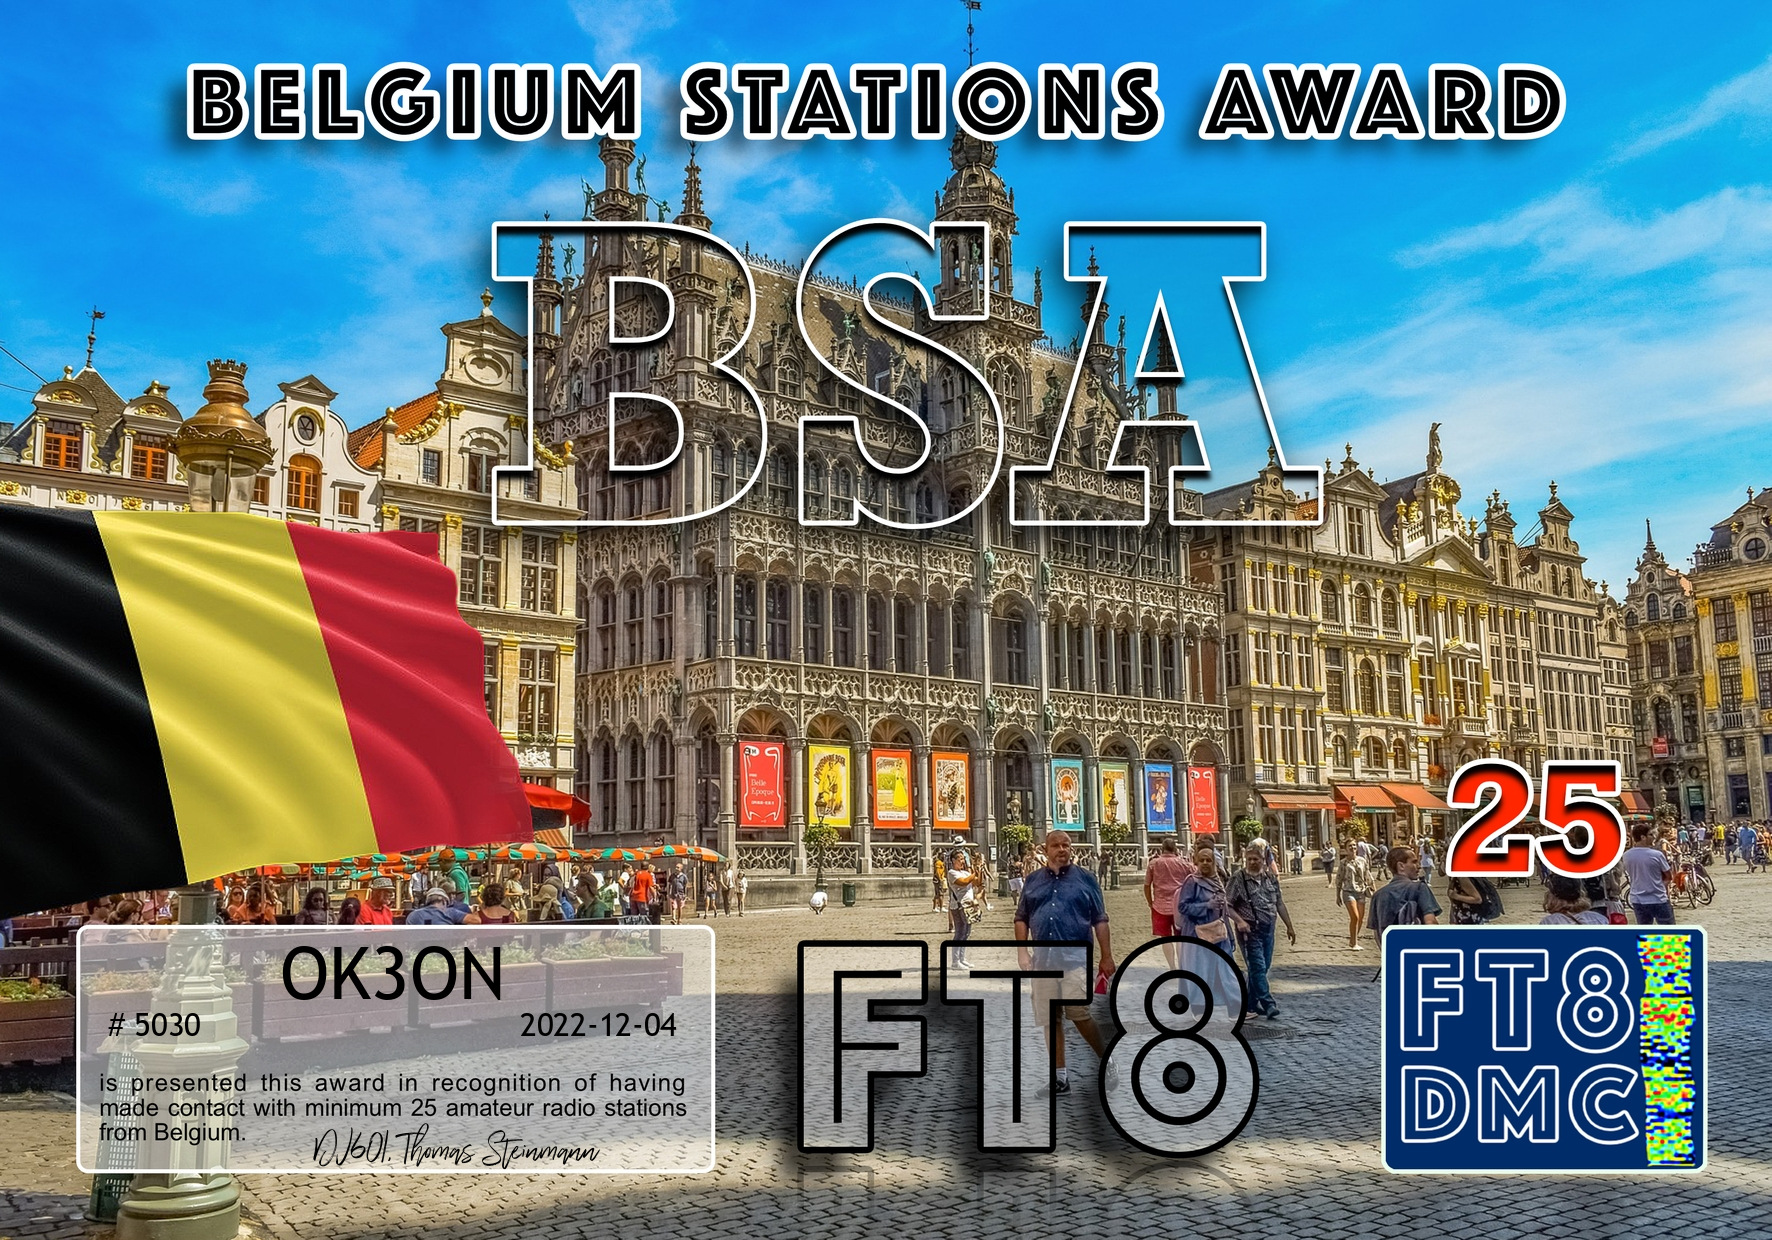 awards/OK3ON-BSA-II_FT8DMC.jpg